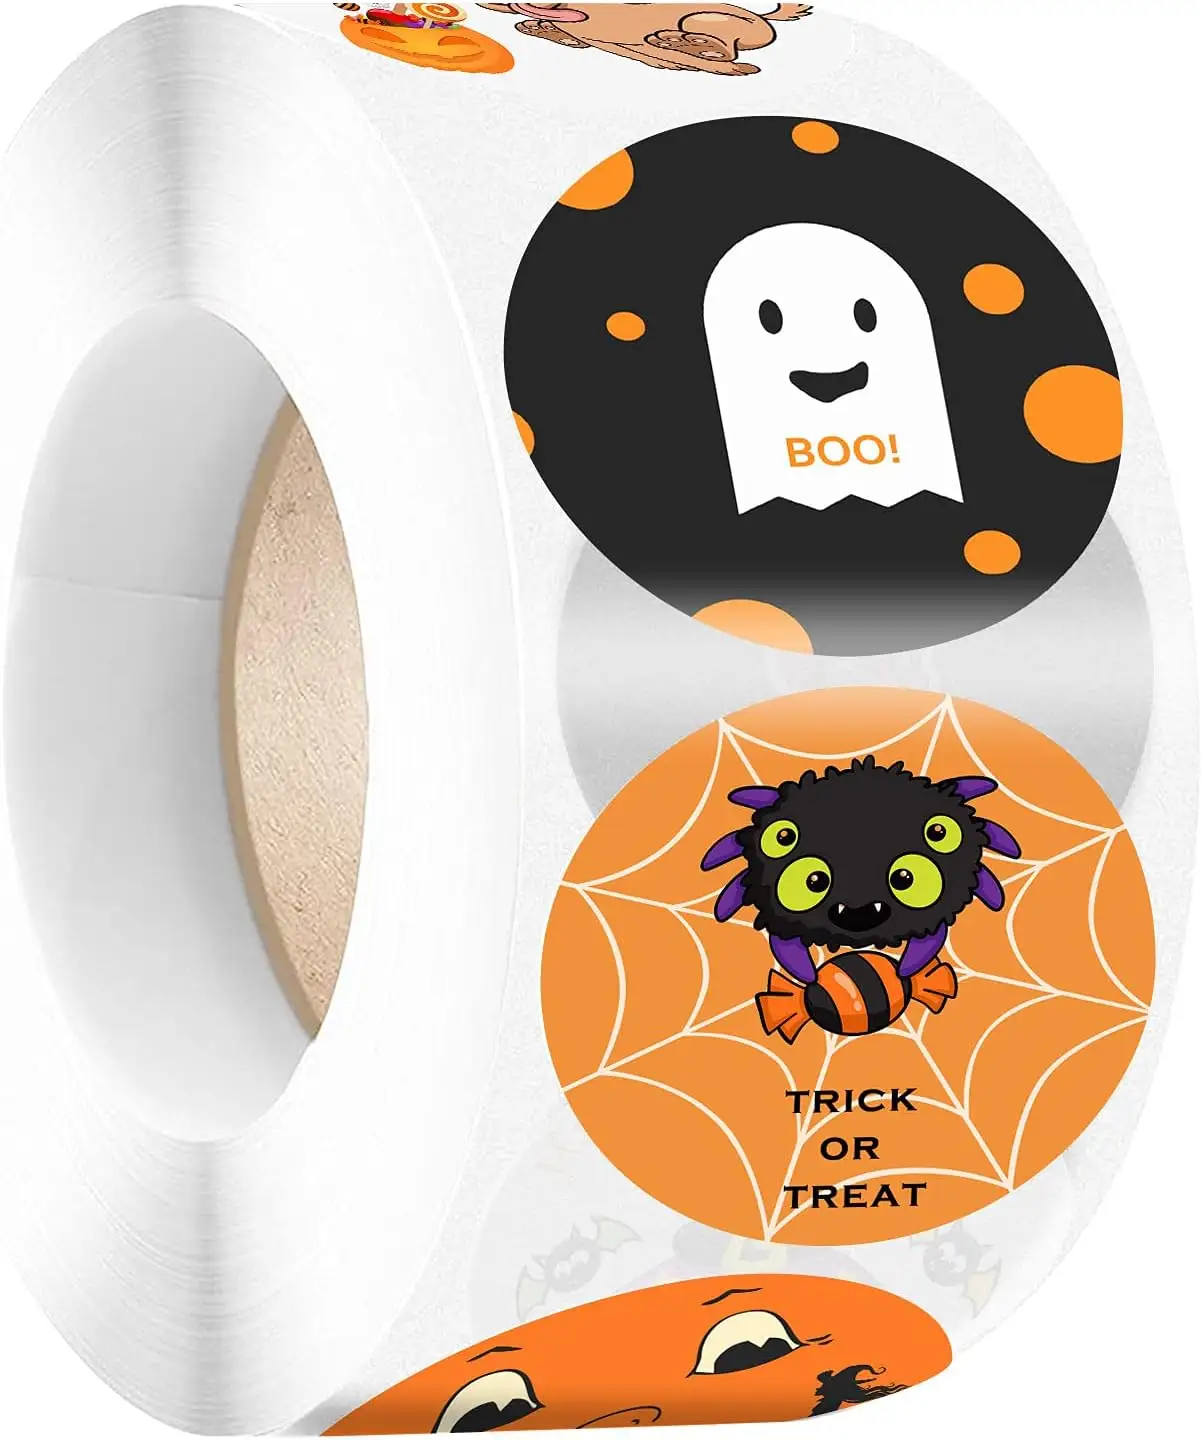 Big Happy Pumpkin Witch Cute Ghost Spider Trick or Treat Theme Conjunto grande Favores de fiesta Suministros de decoración Goodie Bag